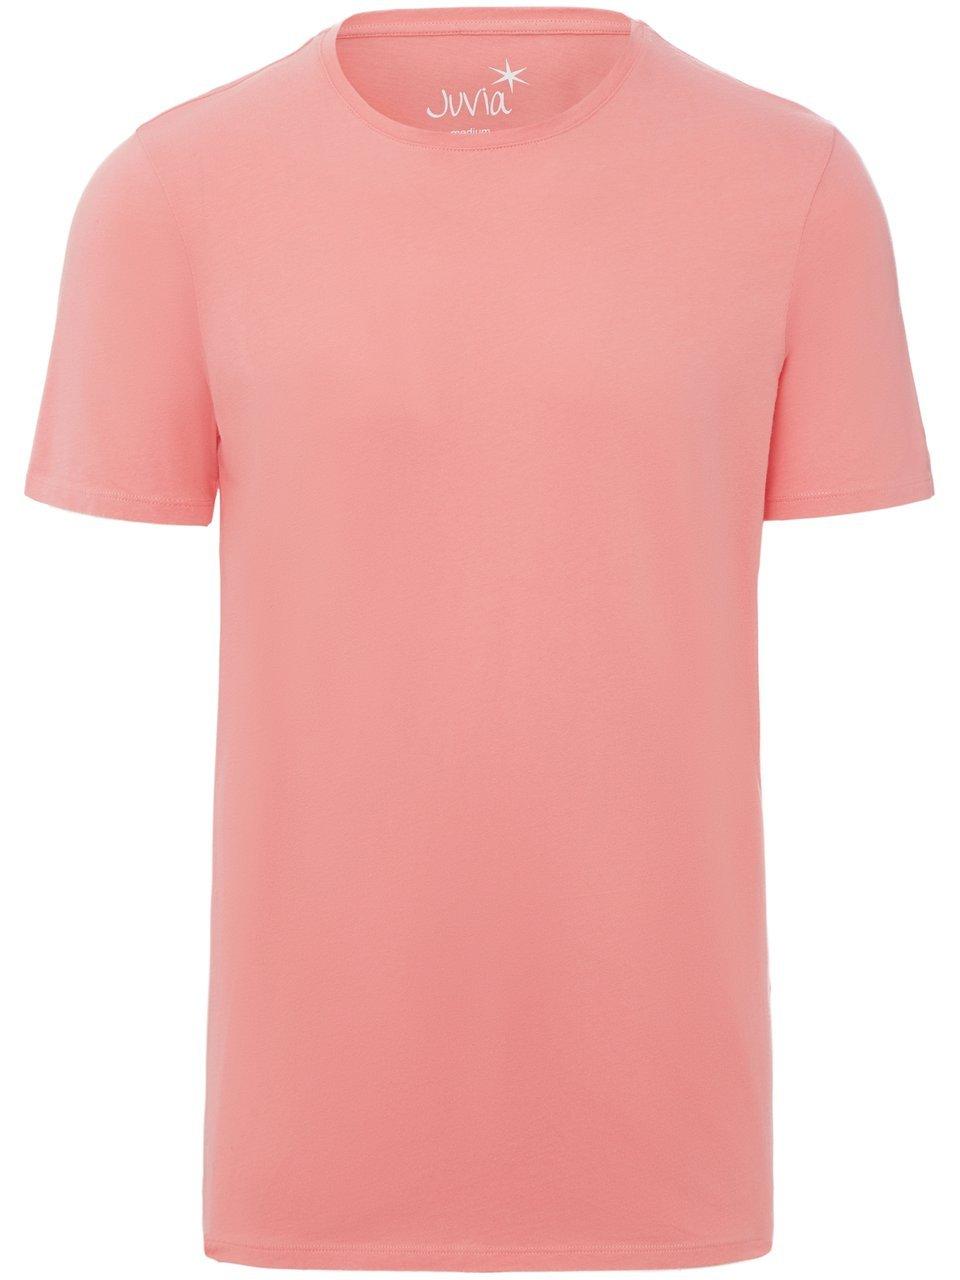 Le T-shirt 100% coton  Juvia rosé